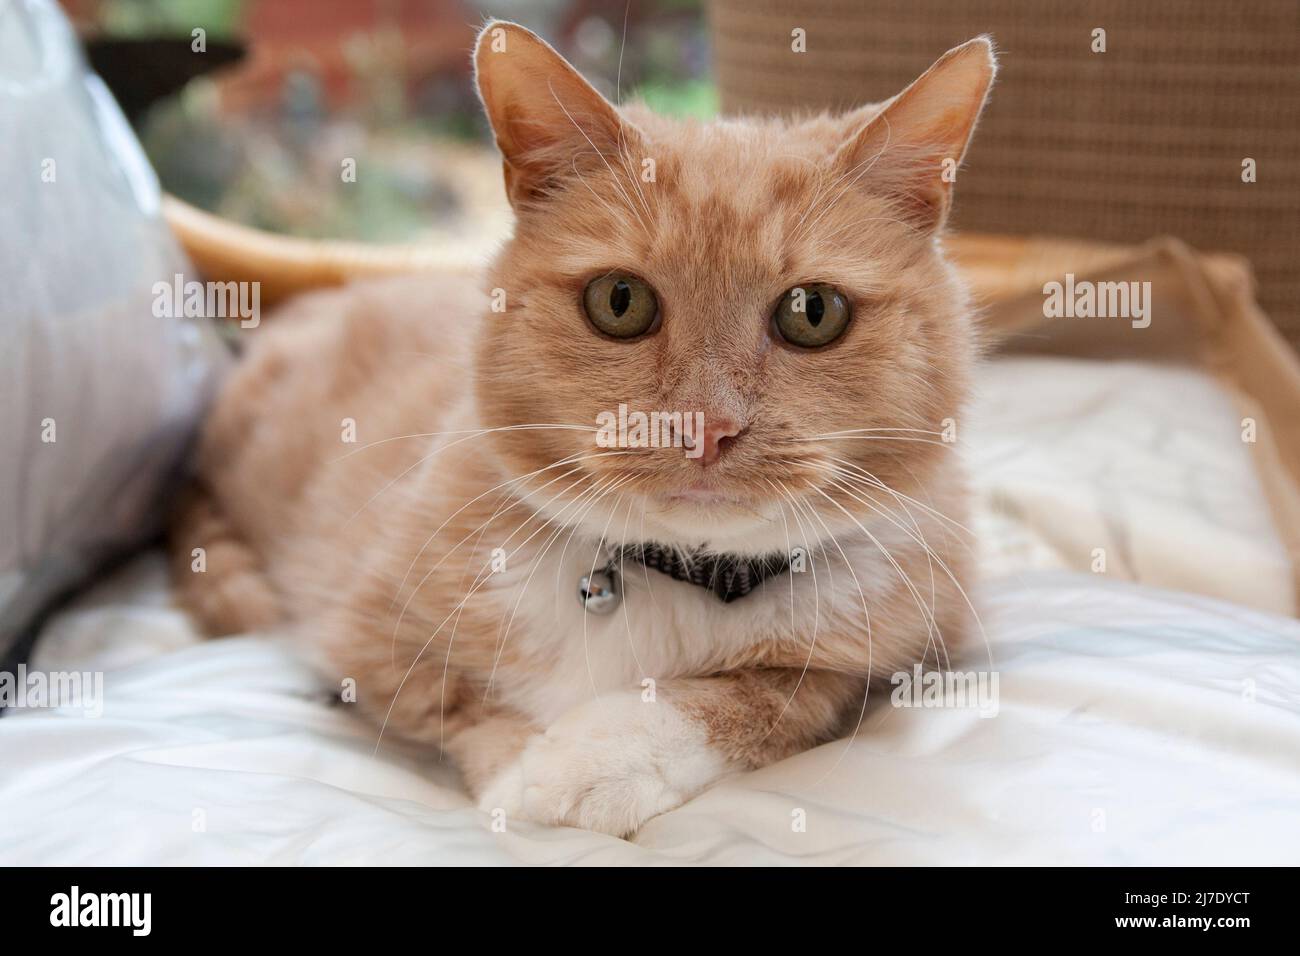 gato de jengibre, adulto, tumbado en silla Foto de stock